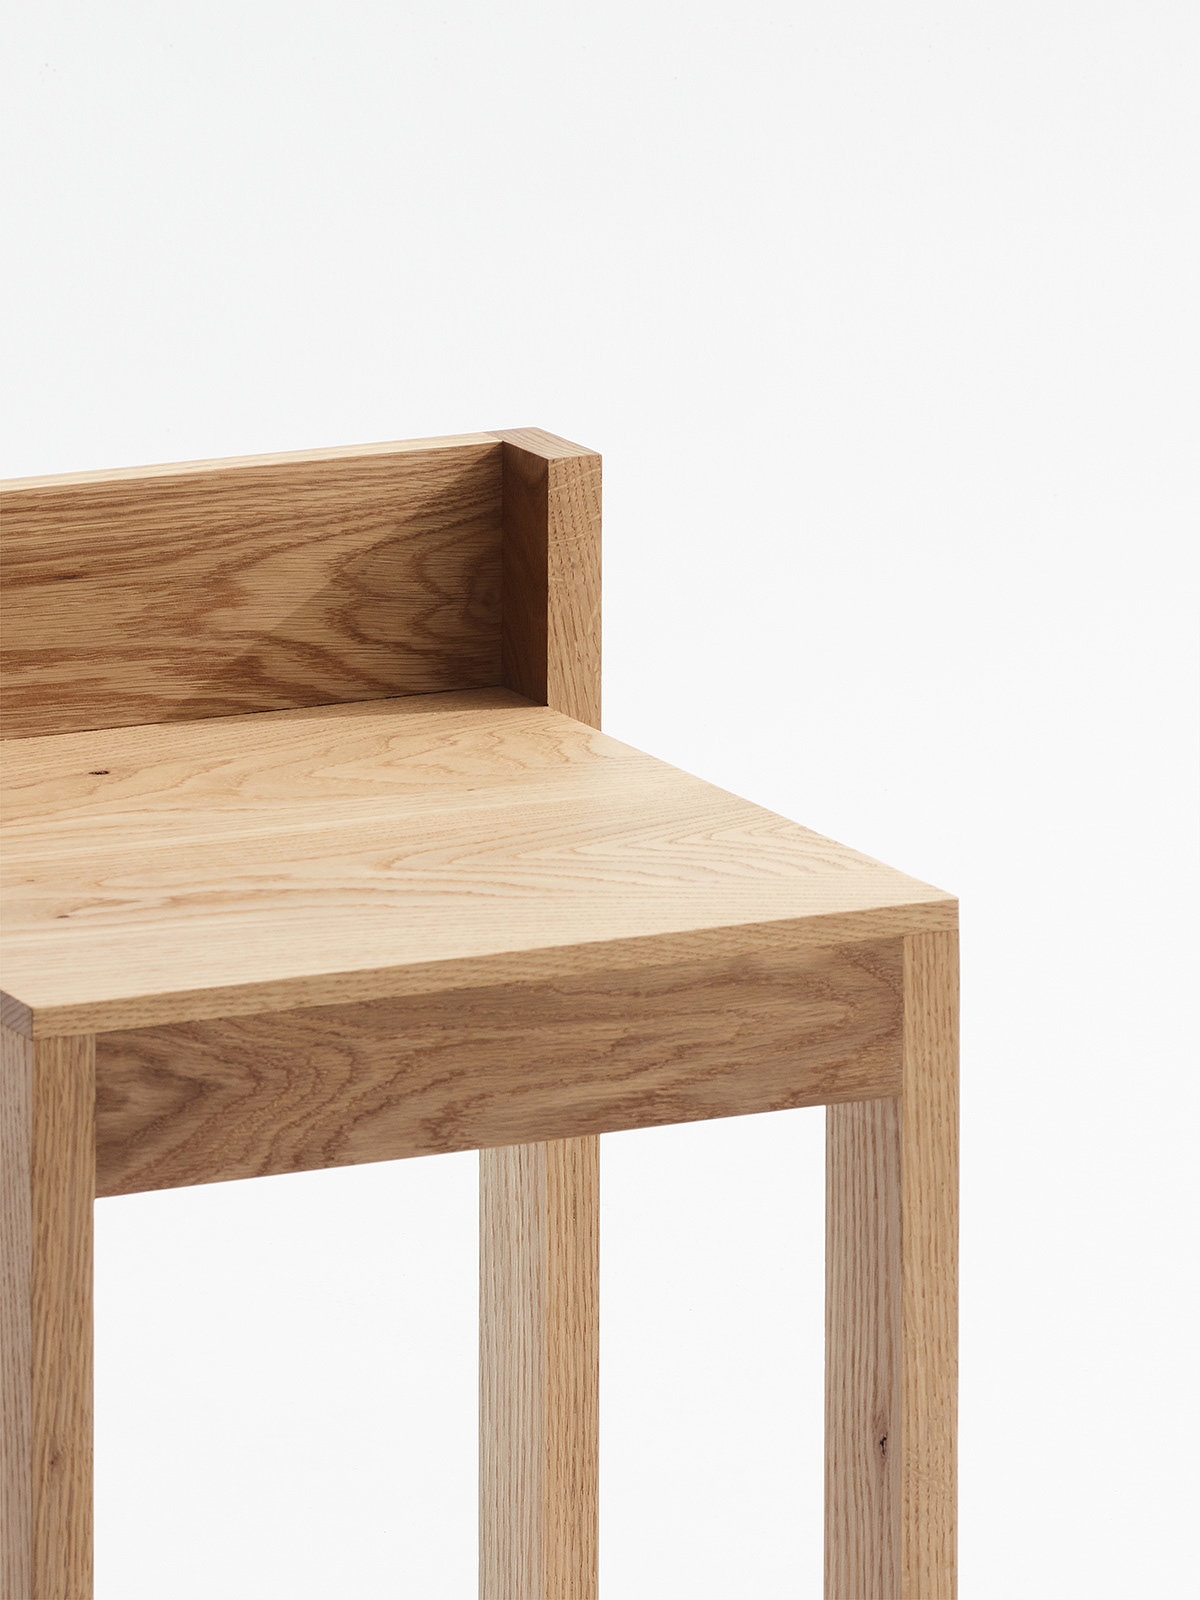 可折叠，极简，节省空间，满足各种生活方式，Surface Chair 380，